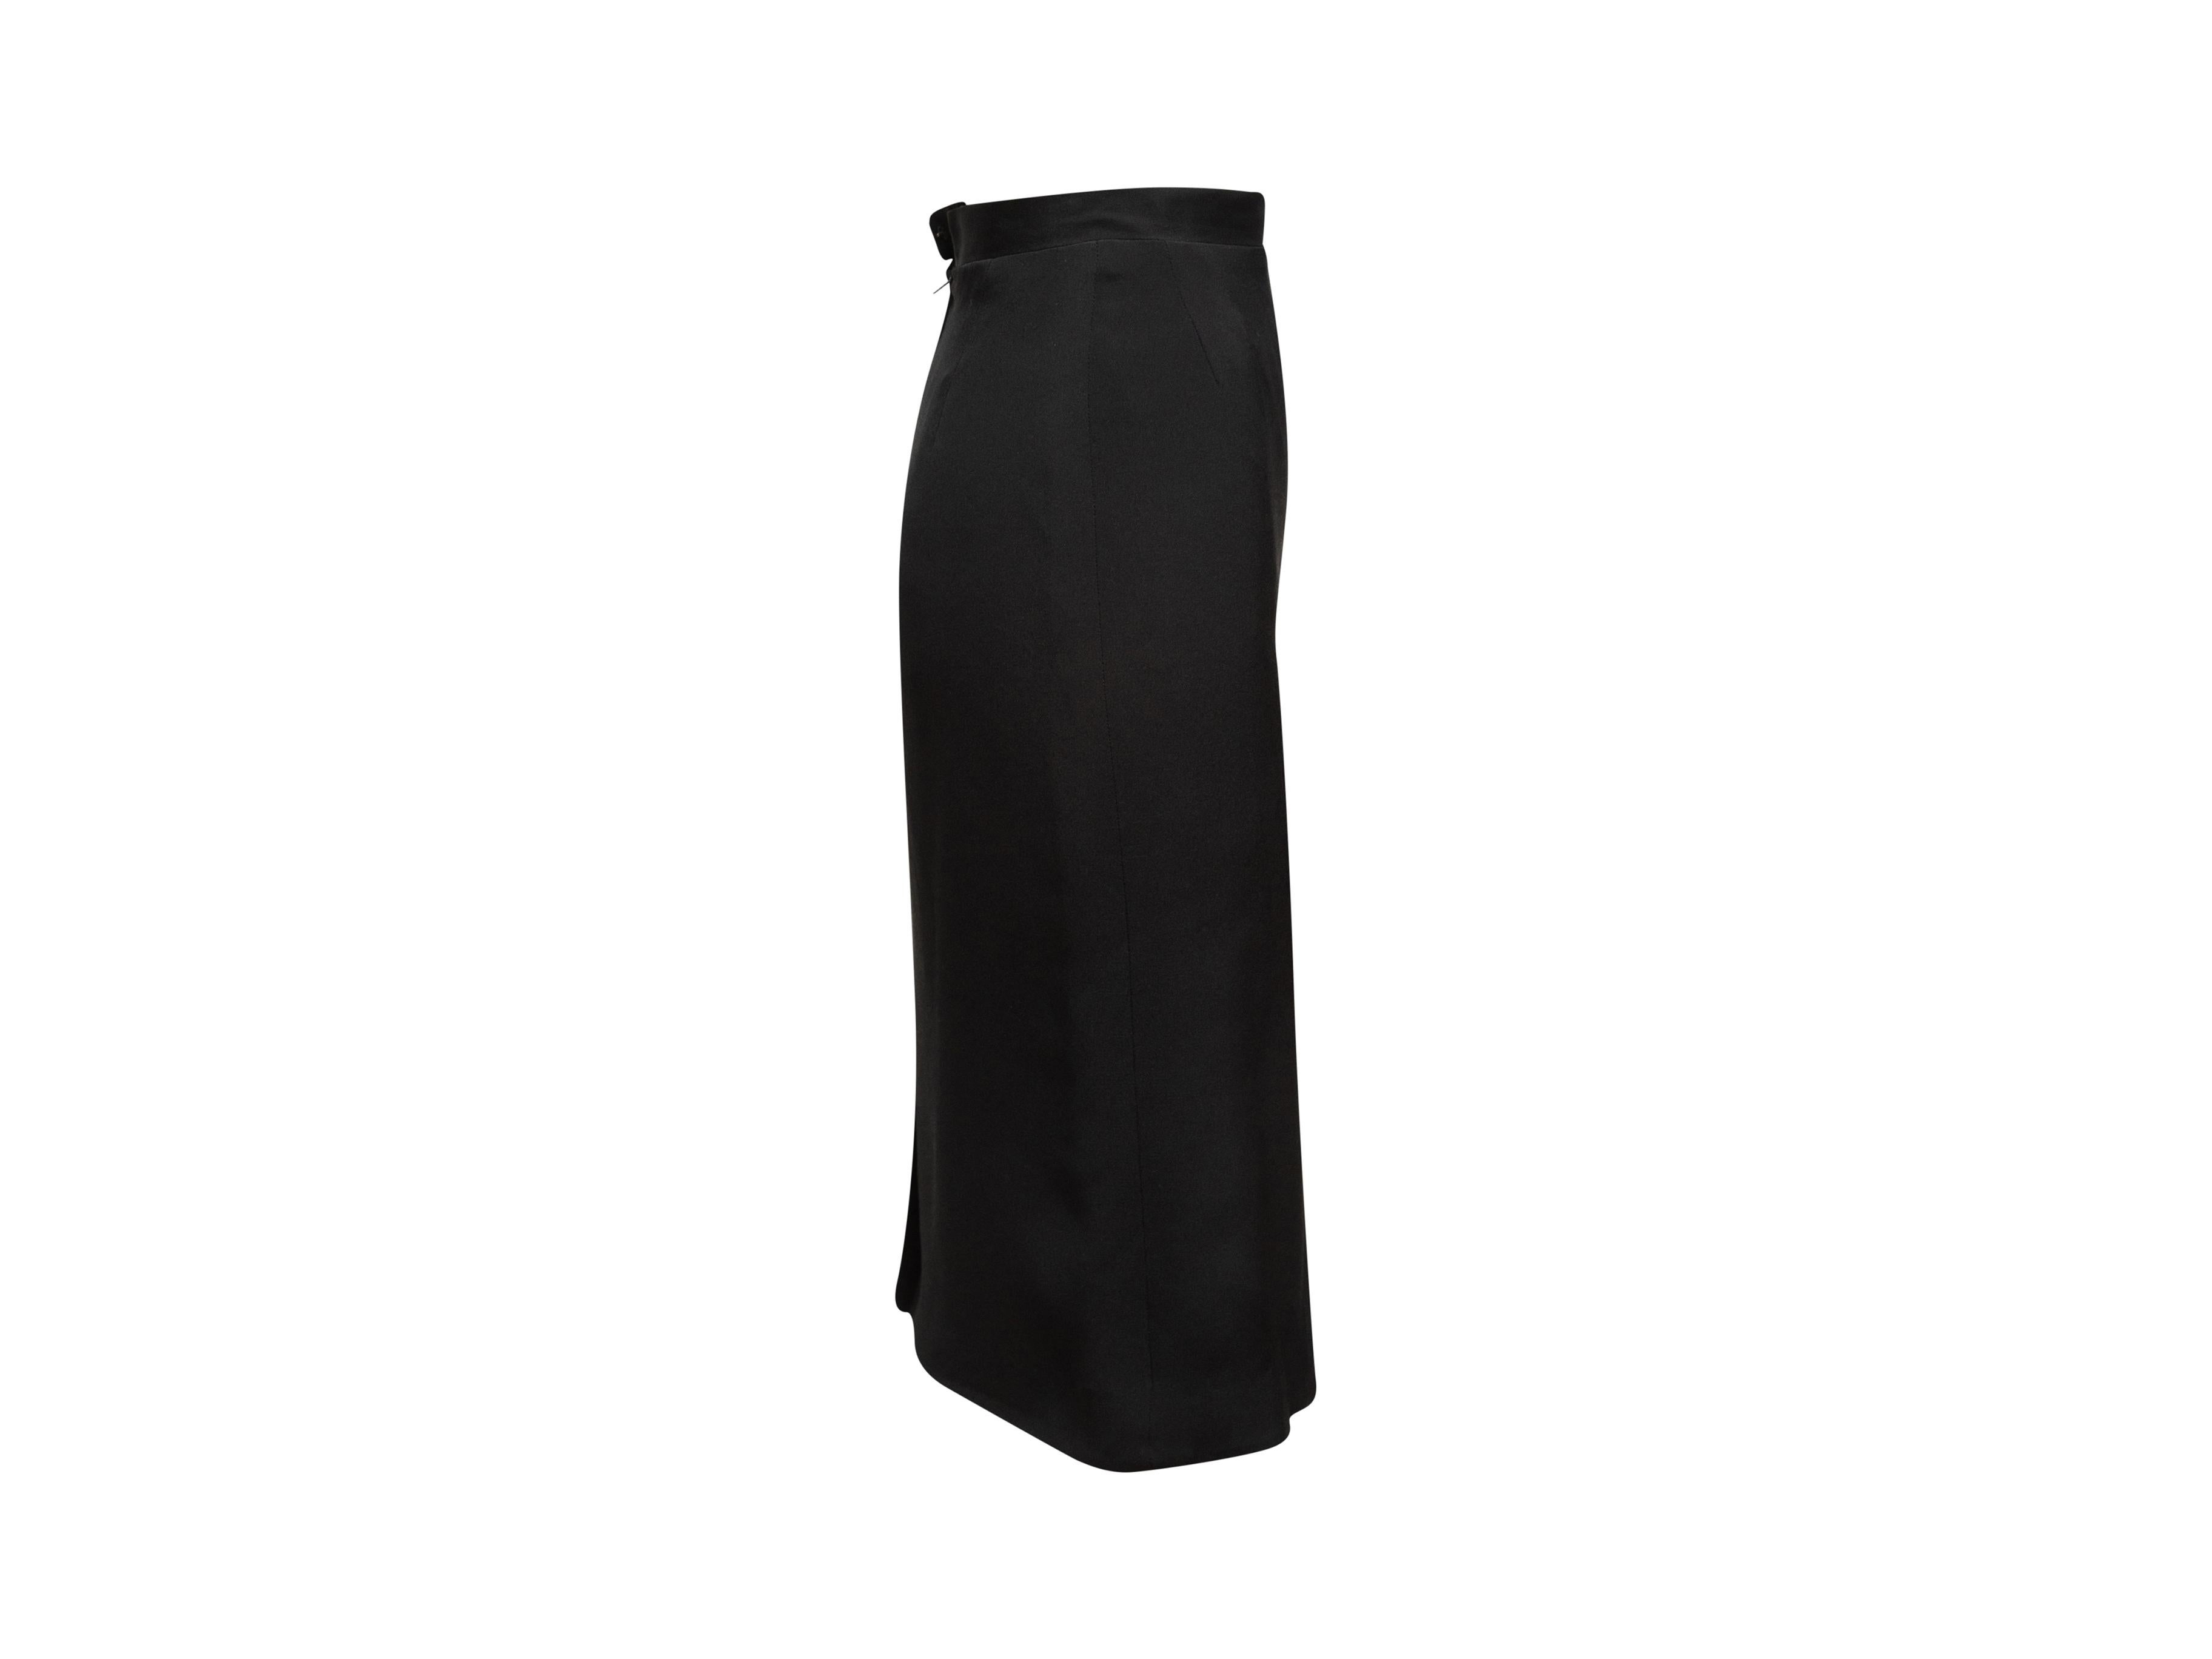 Product details: Vintage black knee-length pencil skirt by Chanel Boutique. Vent at back hem. Concealed zip and hook-and-eye closures at center back. Designer size 36. 24